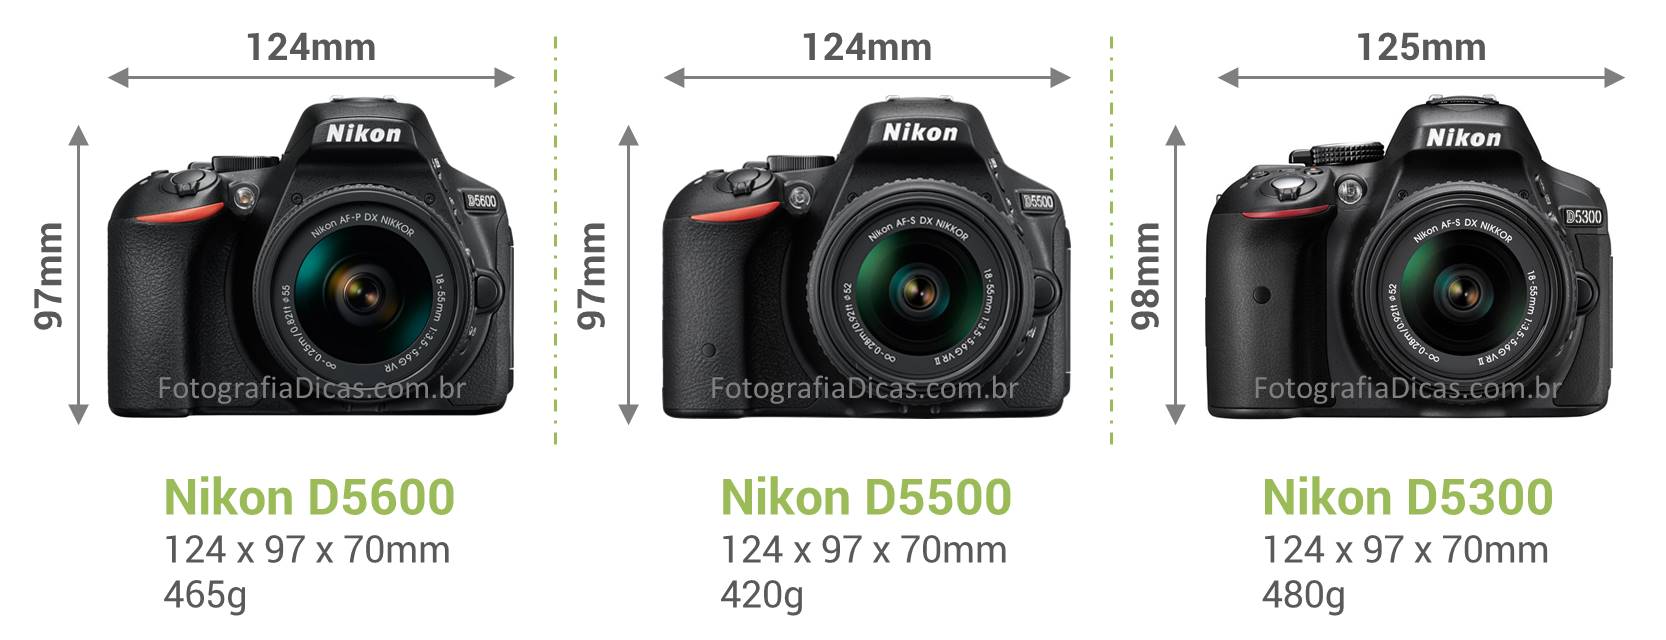 Nikon D5600 - Fotografia Dicas 3